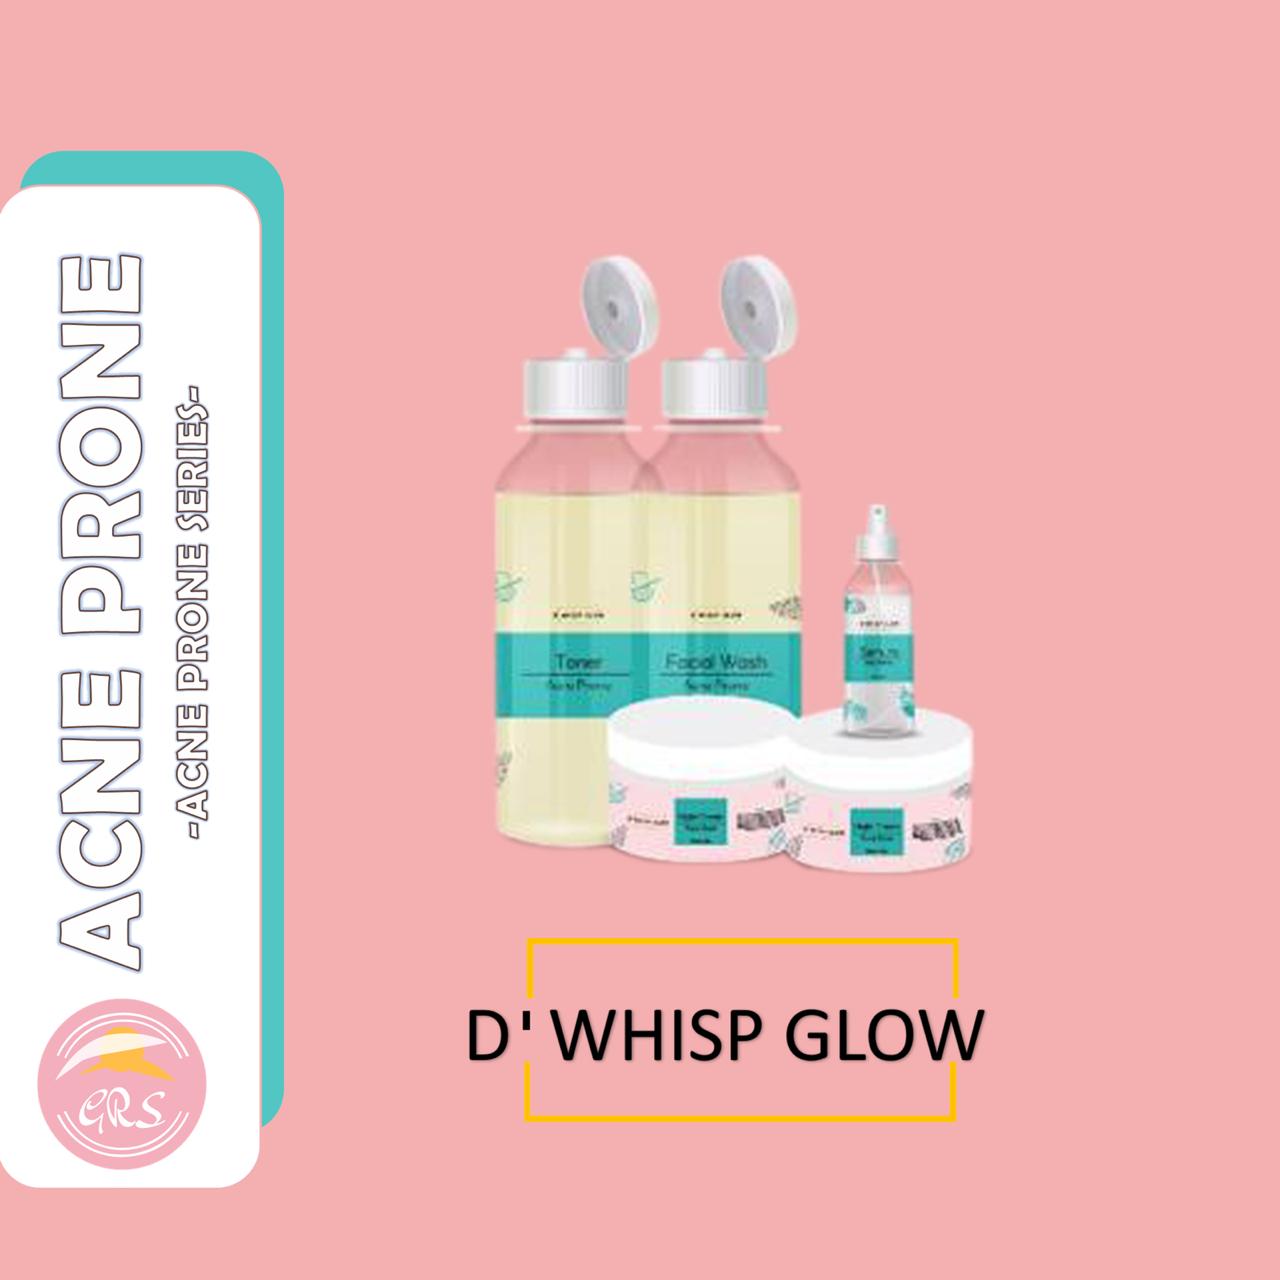 Eleora Dwhisp Glow Diamond Acne Membeli Jualan Online Serum Perawatan Wajah Dengan Harga Murah Lazada Indonesia